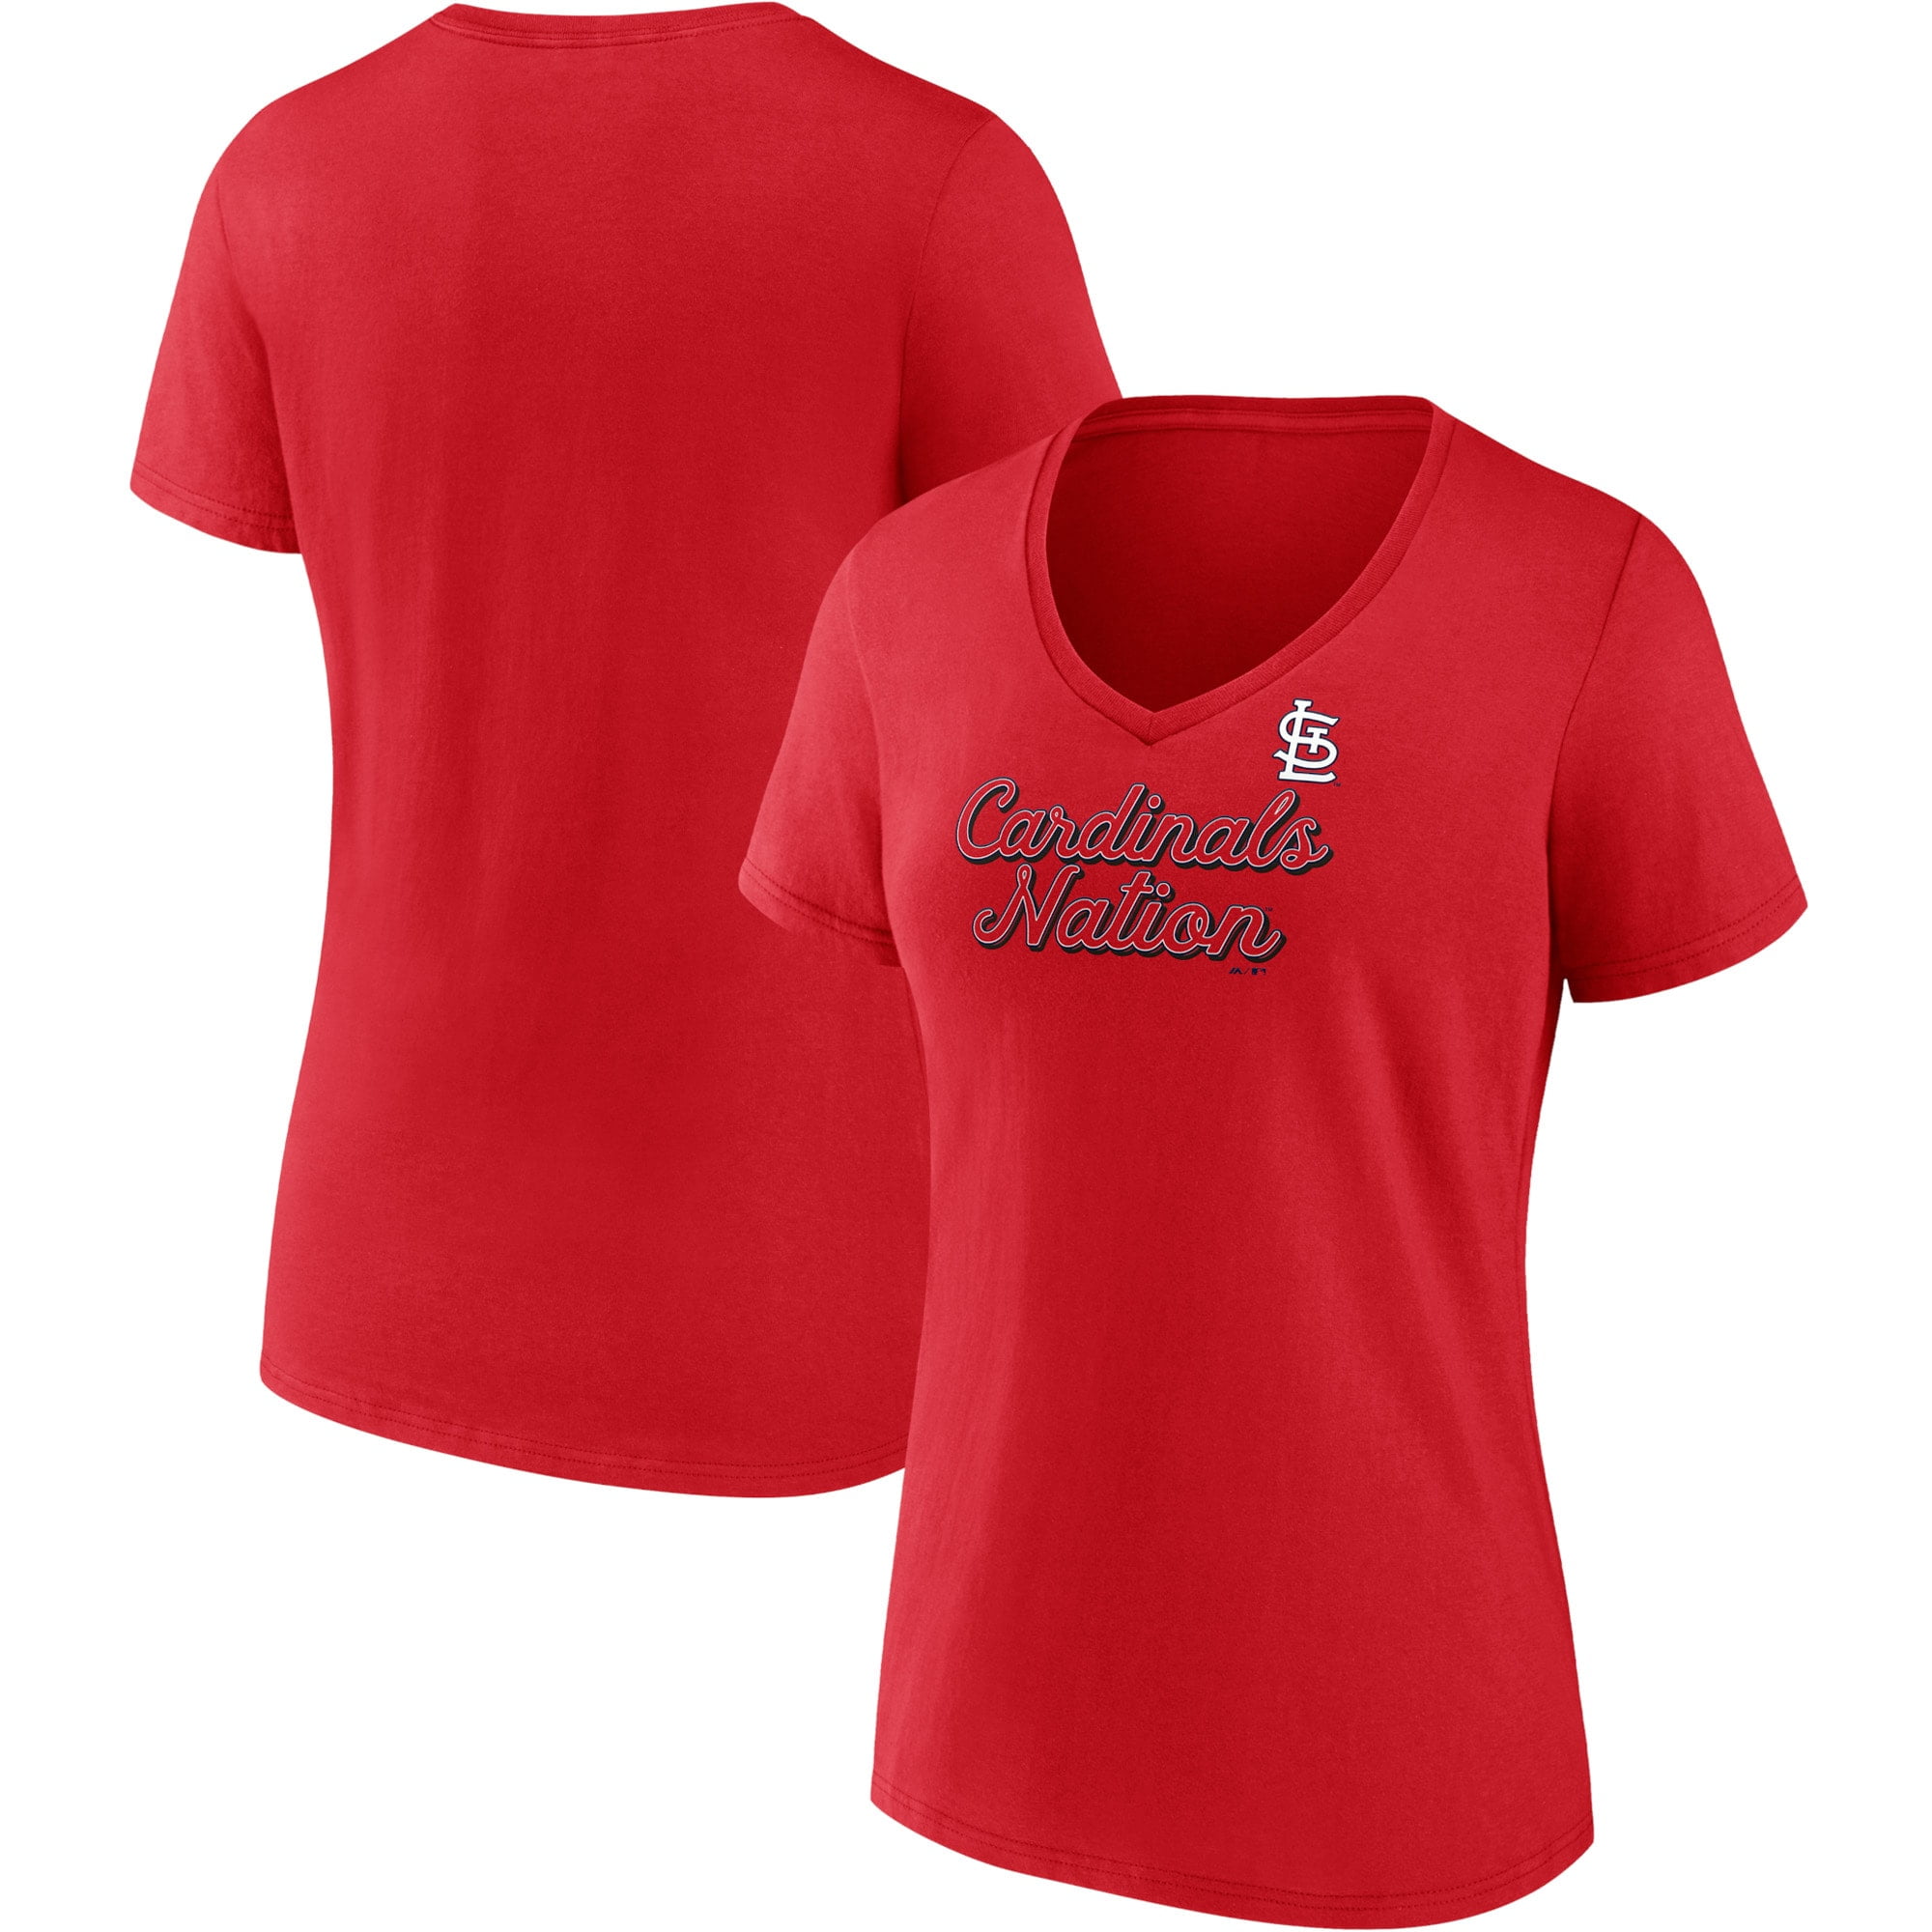 Women's Fanatics Branded Red St. Louis Cardinals Regulation V-Neck T-Shirt